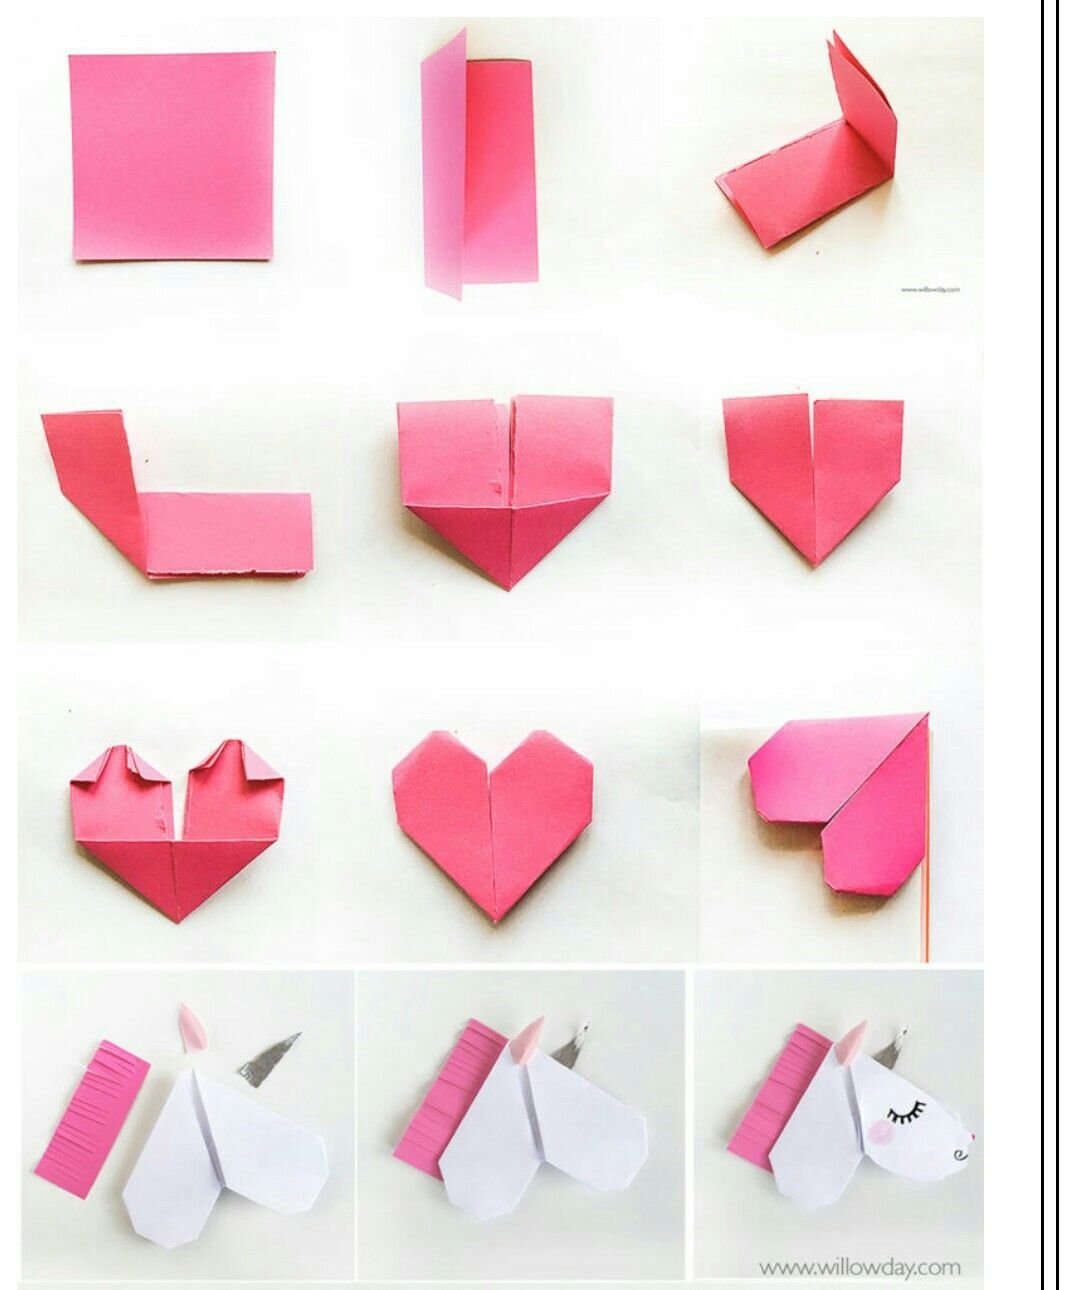 Что можно сделать из бумаги для девочек. Сердечко из бумаги. Оригами сердечко. Маленькие сердечки из бумаги. Сердечки ИЖ буммги.